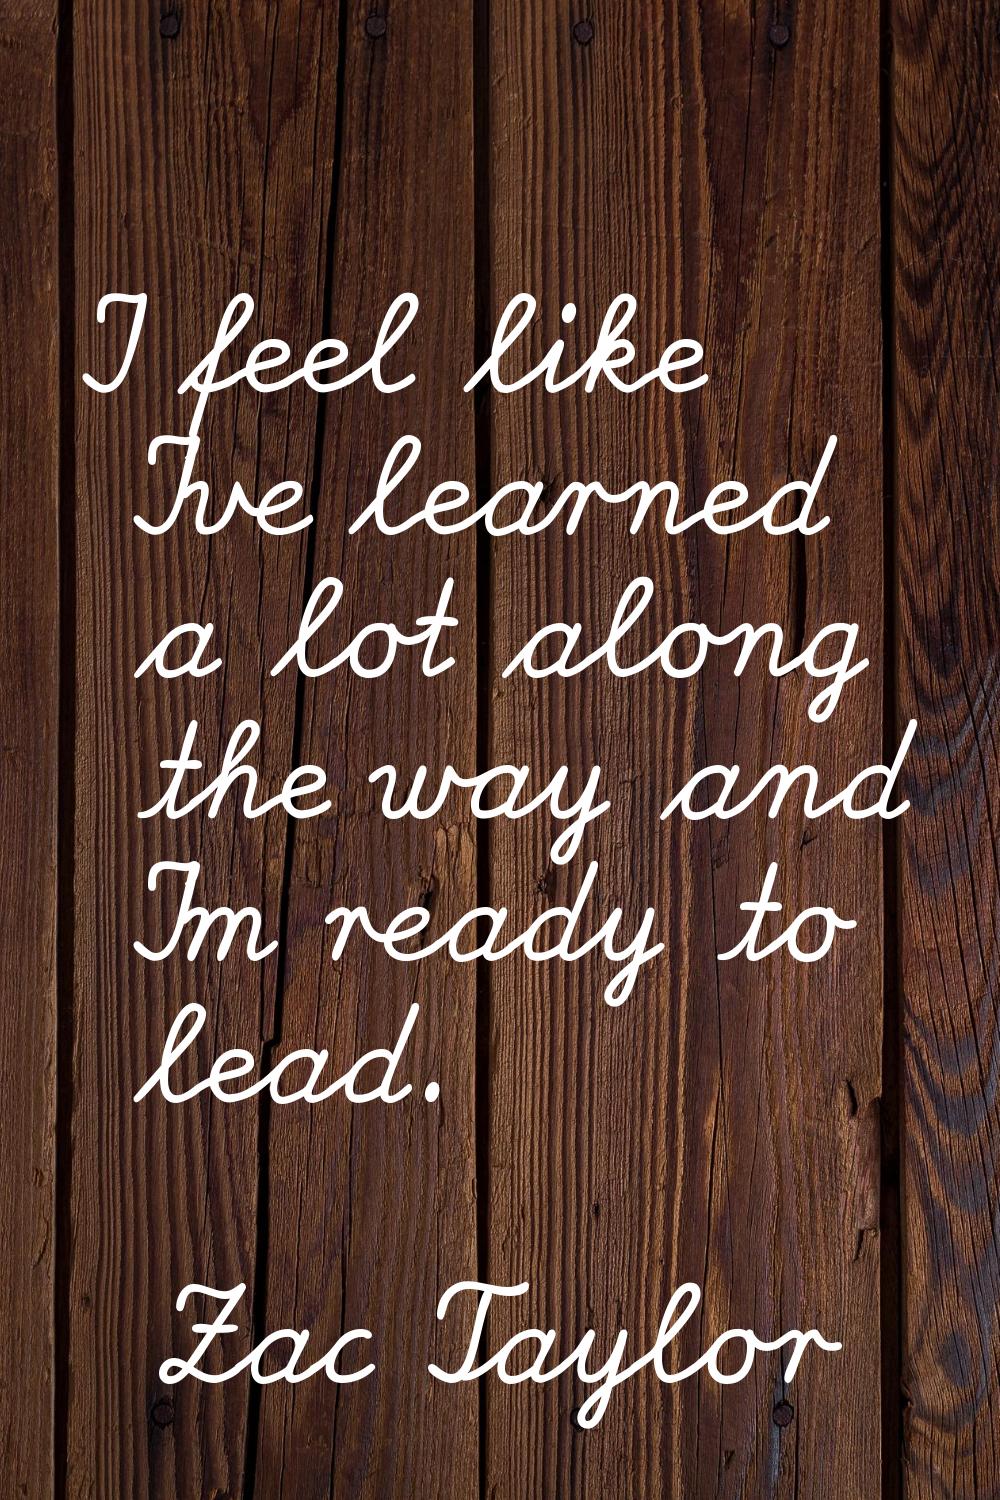 I feel like I've learned a lot along the way and I'm ready to lead.